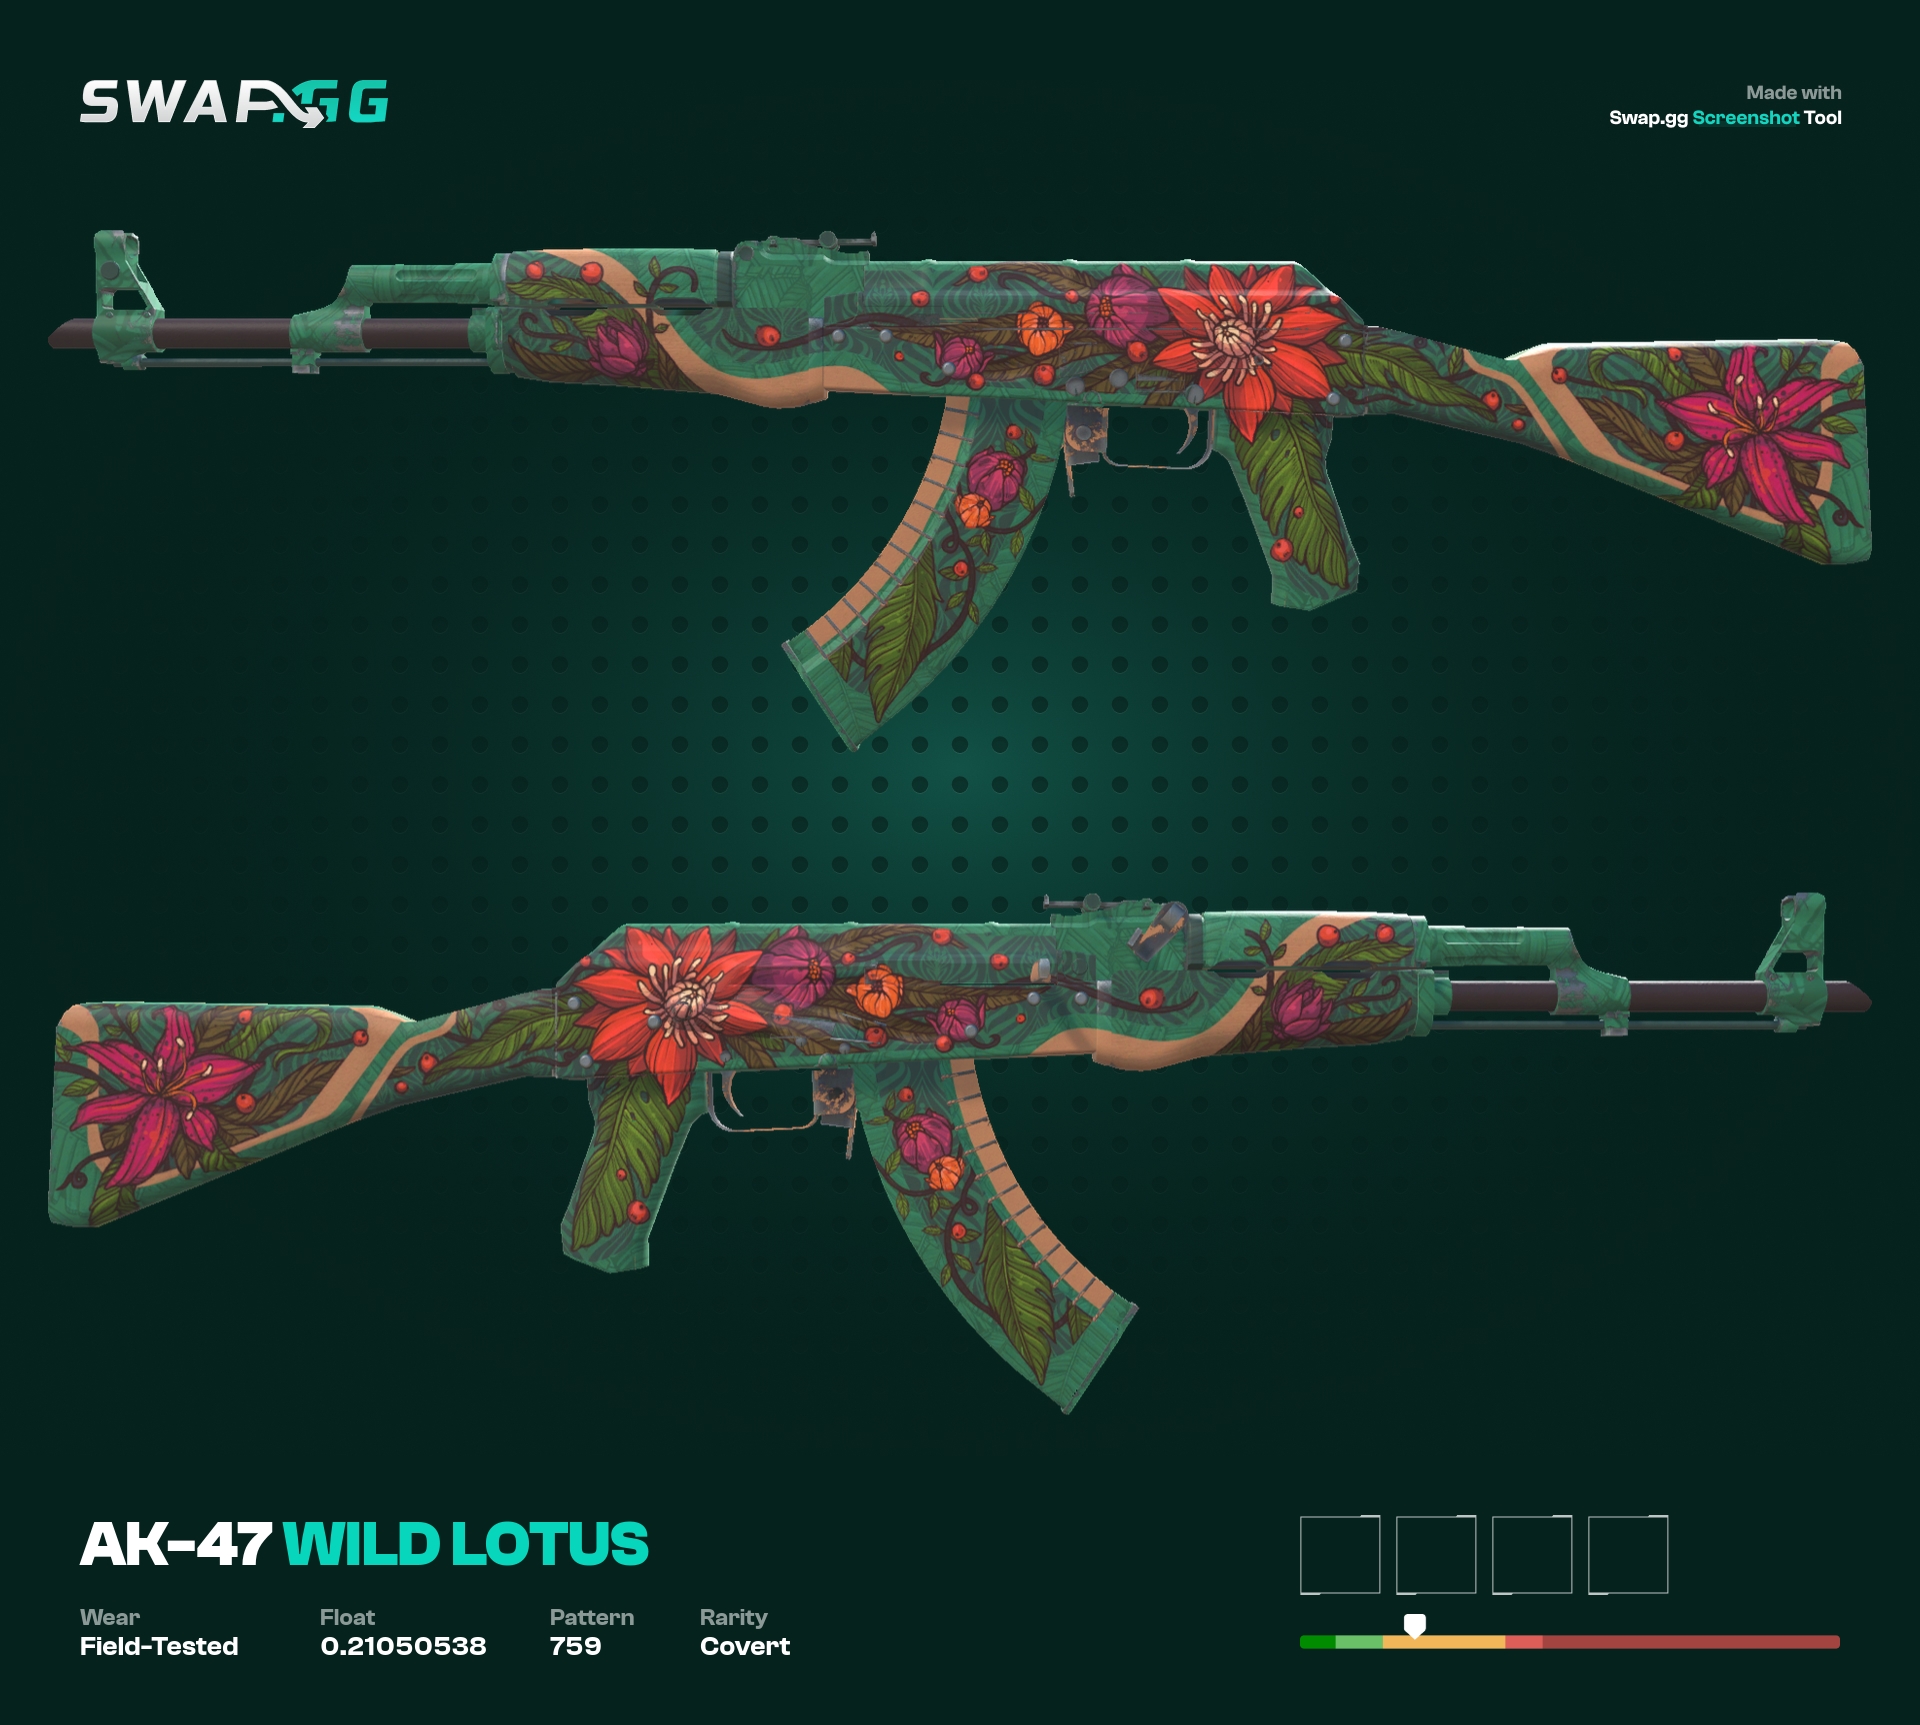 AK-47 Wild Lotus FT - BarbaBill